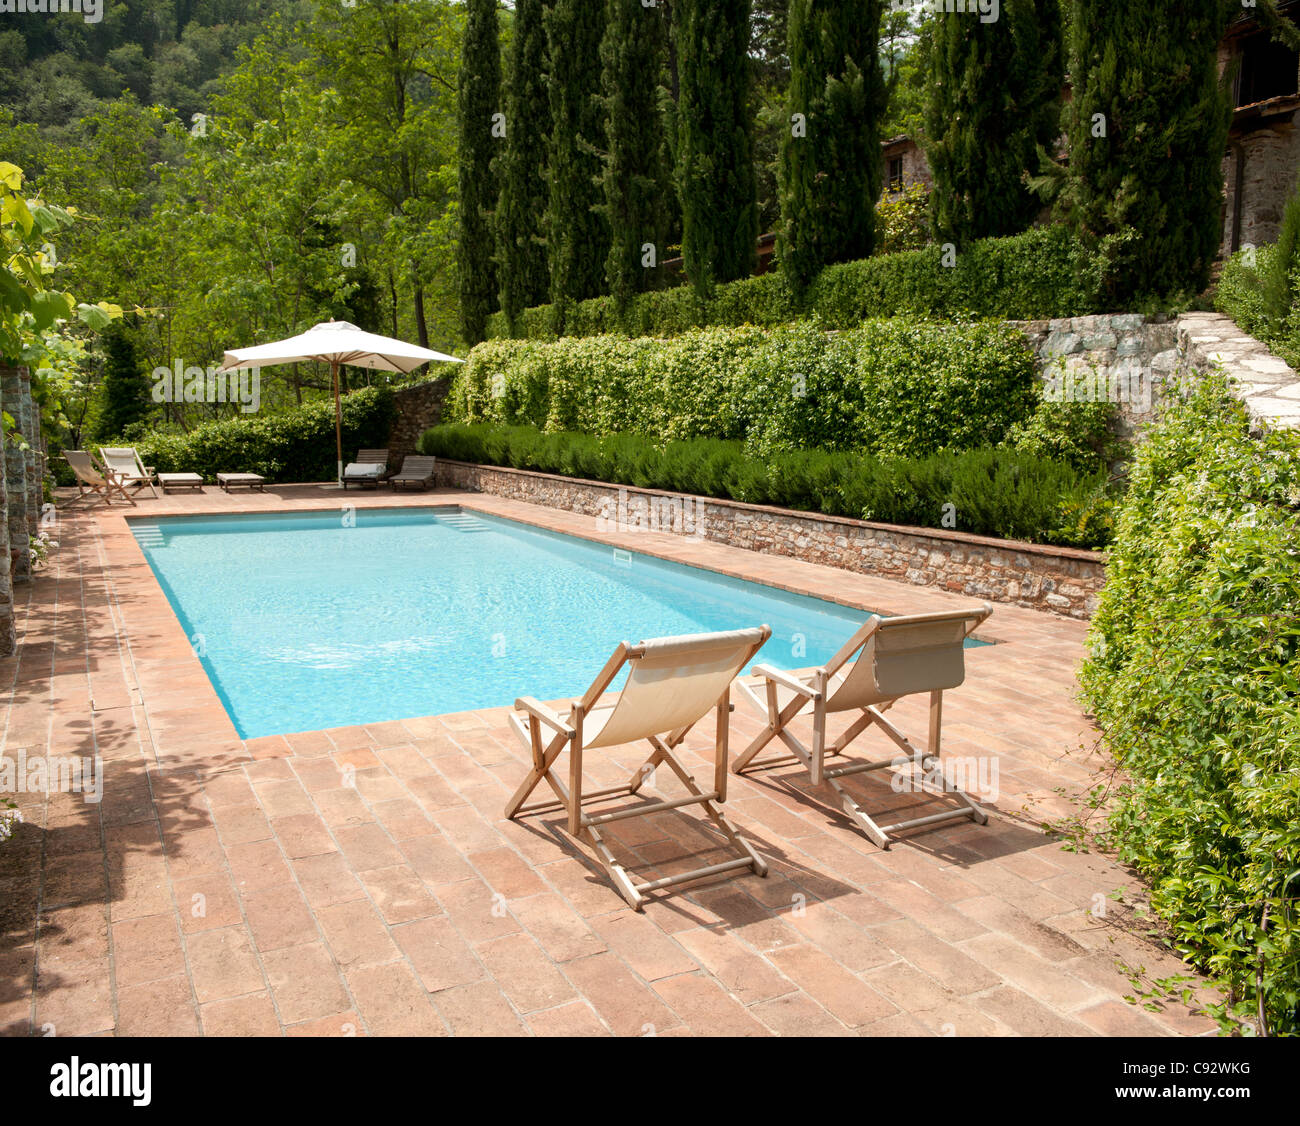 Viele Luxushotels und Villen in der nördlichen Toskana haben schöne Swimmingpools, die bei Besuchern und Gästen beliebt sind. Stockfoto